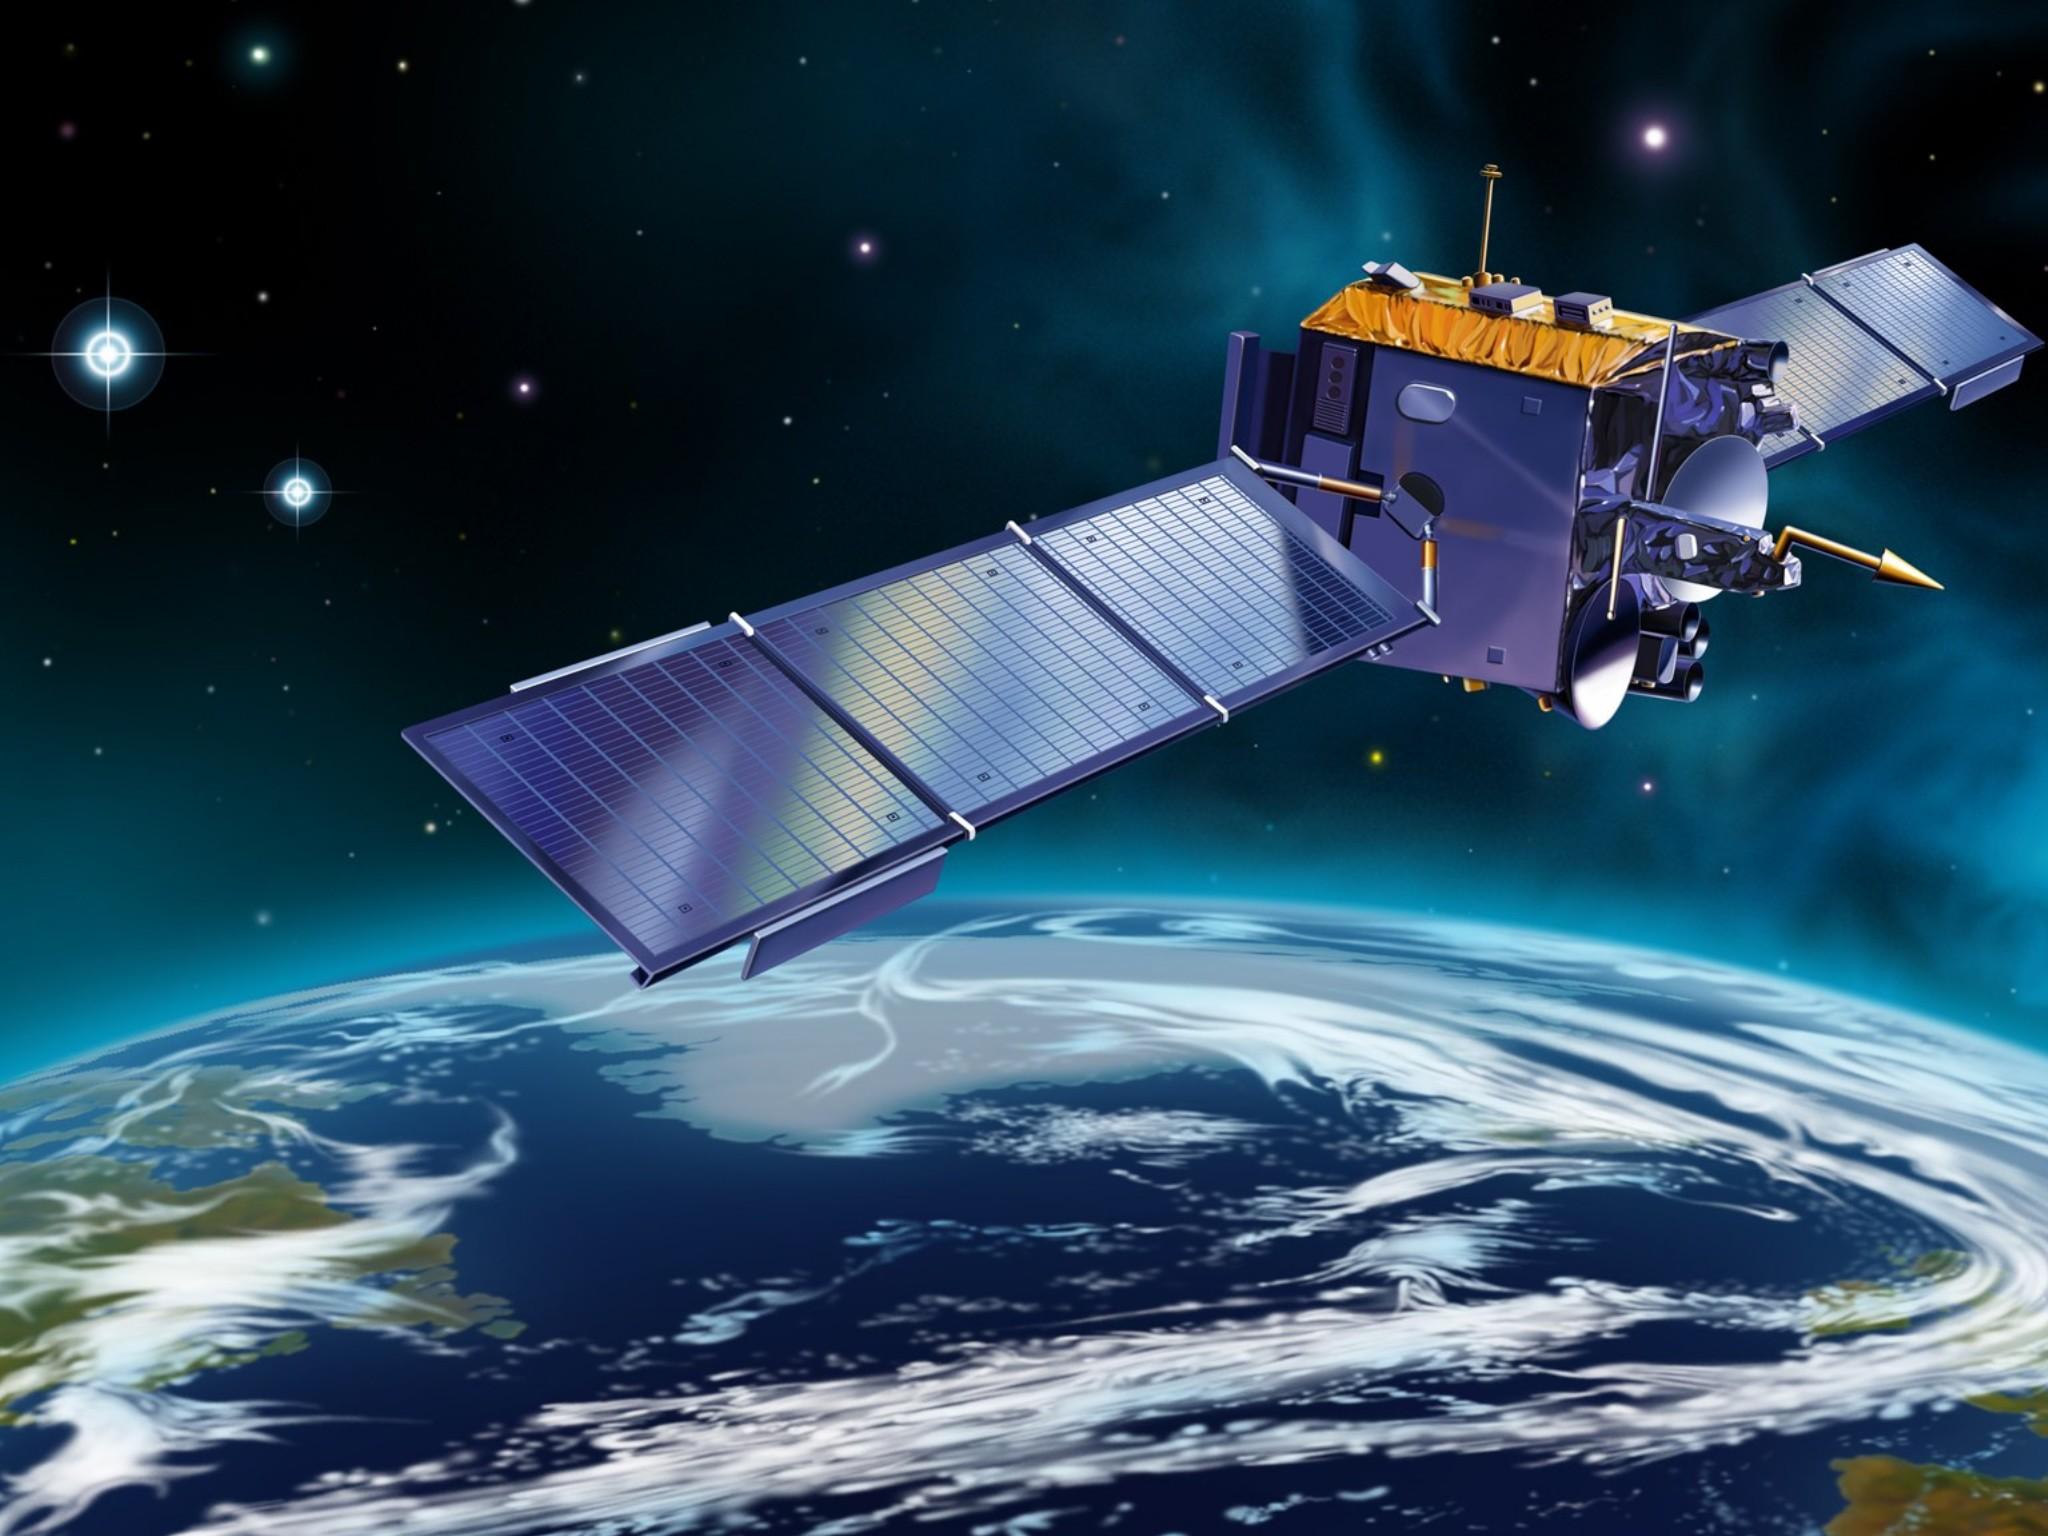 “墨子号”量子卫星实现基于纠缠的量子密钥分发 可确保卫星被他方控制下安全通信 - 2020年6月16日, 俄罗斯卫星通讯社